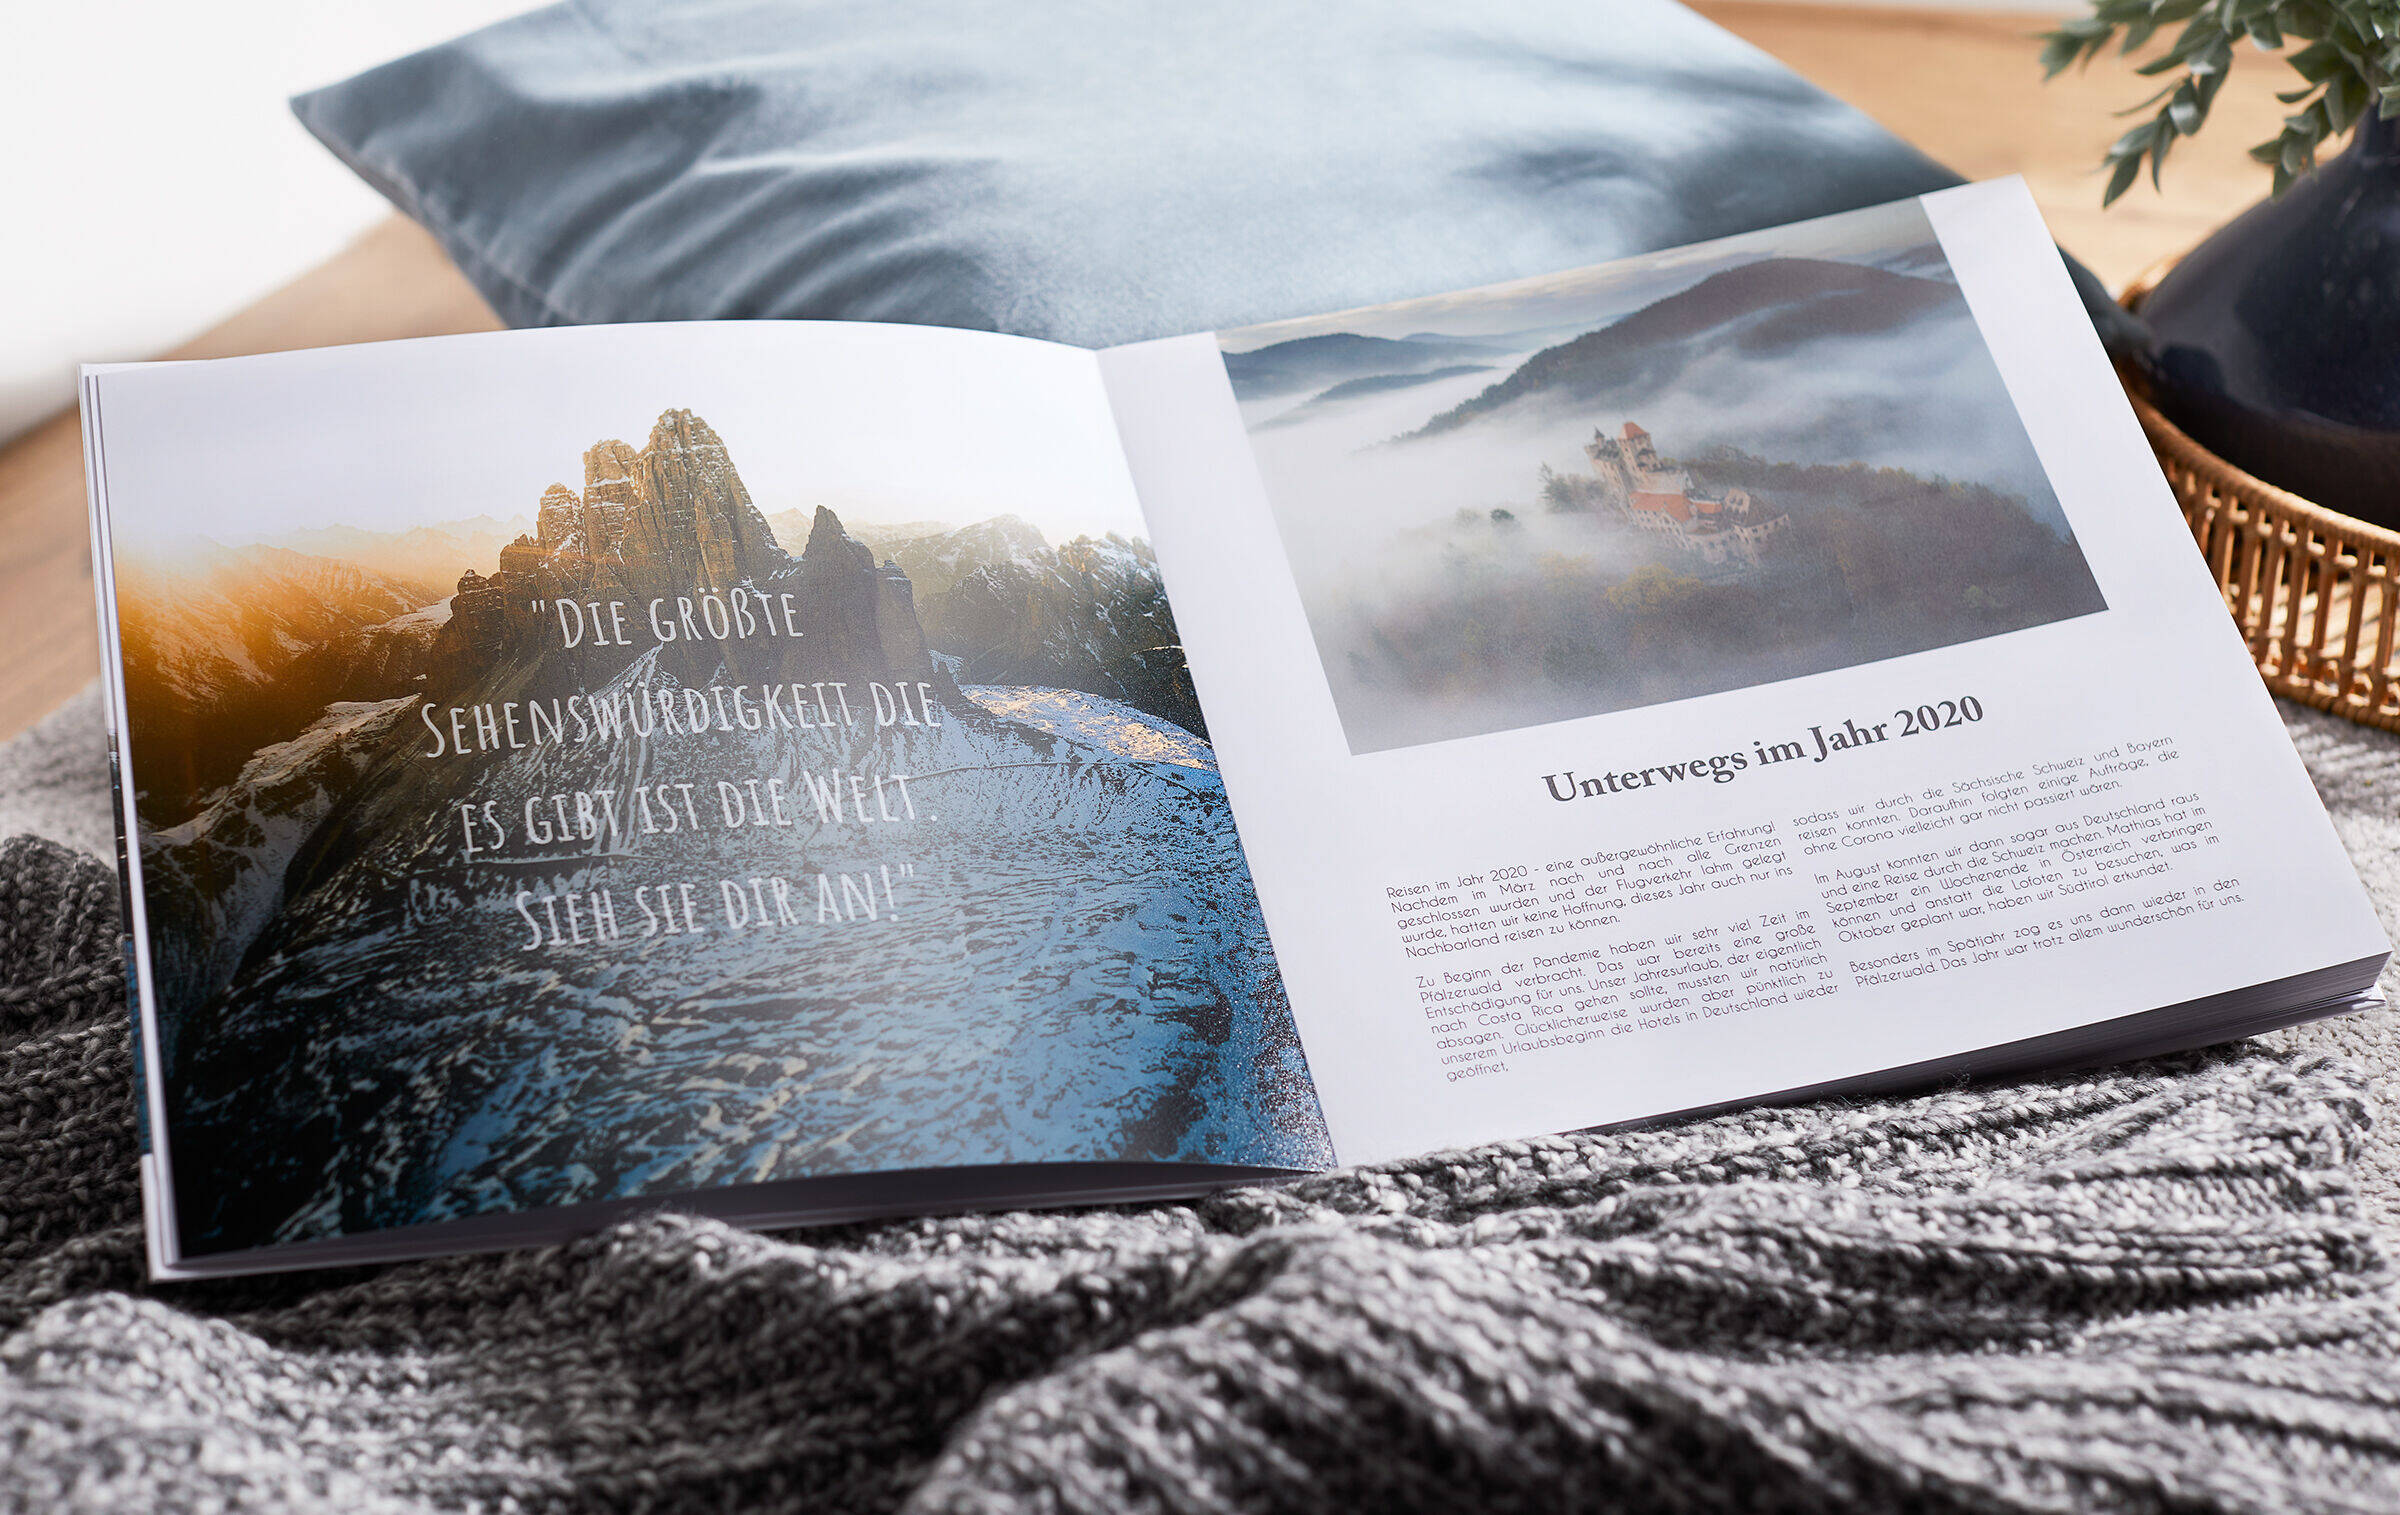 Auf der linken Seite des Fotobuchs befindet sich auf einem Foto ein Zitat über das Reisen. Das Foto scheint transparent hindurch.